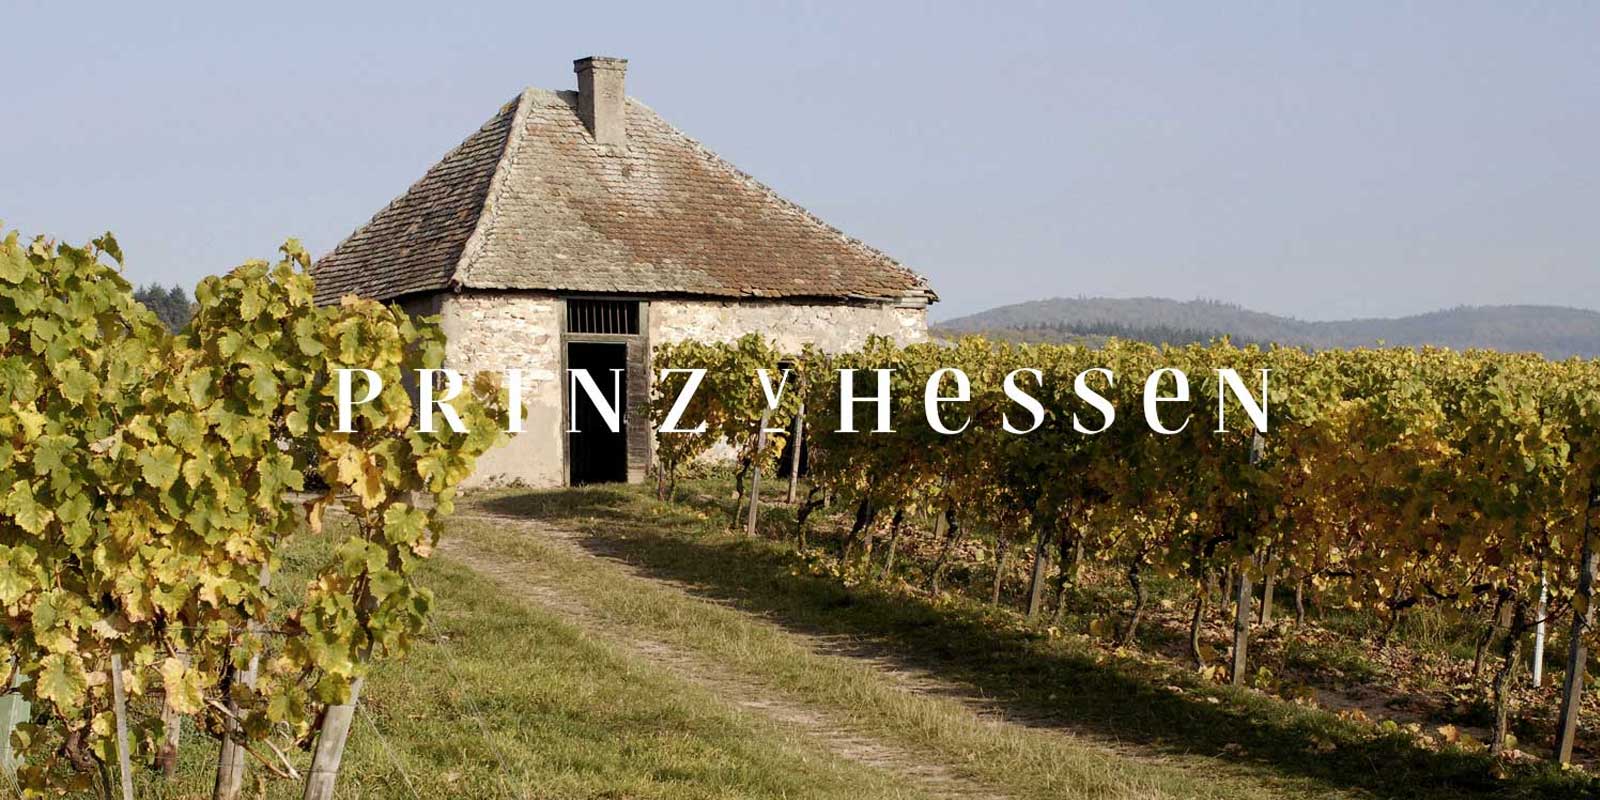 Prince of Hessen viinitila - Rheingaun viinialue Rheingaun Johannisbergissa sijaitseva PRINZ VON HESSEN -viinitila on yksi Saksan merkittavimmista Riesling-tuottajista ja Rheingaun alueyhdistyksen VDP:n perustajajasen. Lukuisat tunnustukset kotimaassa ja ulkomailla kertovat PRINZ VON HESSEN -viinitilasta, joka on huipputasoa. PRINZ VON HESSEN -viinitilan viinit ja kuohuviinit ovat voittaneet monia palkintoja ja korkeita kansainvalisia palkintoja.